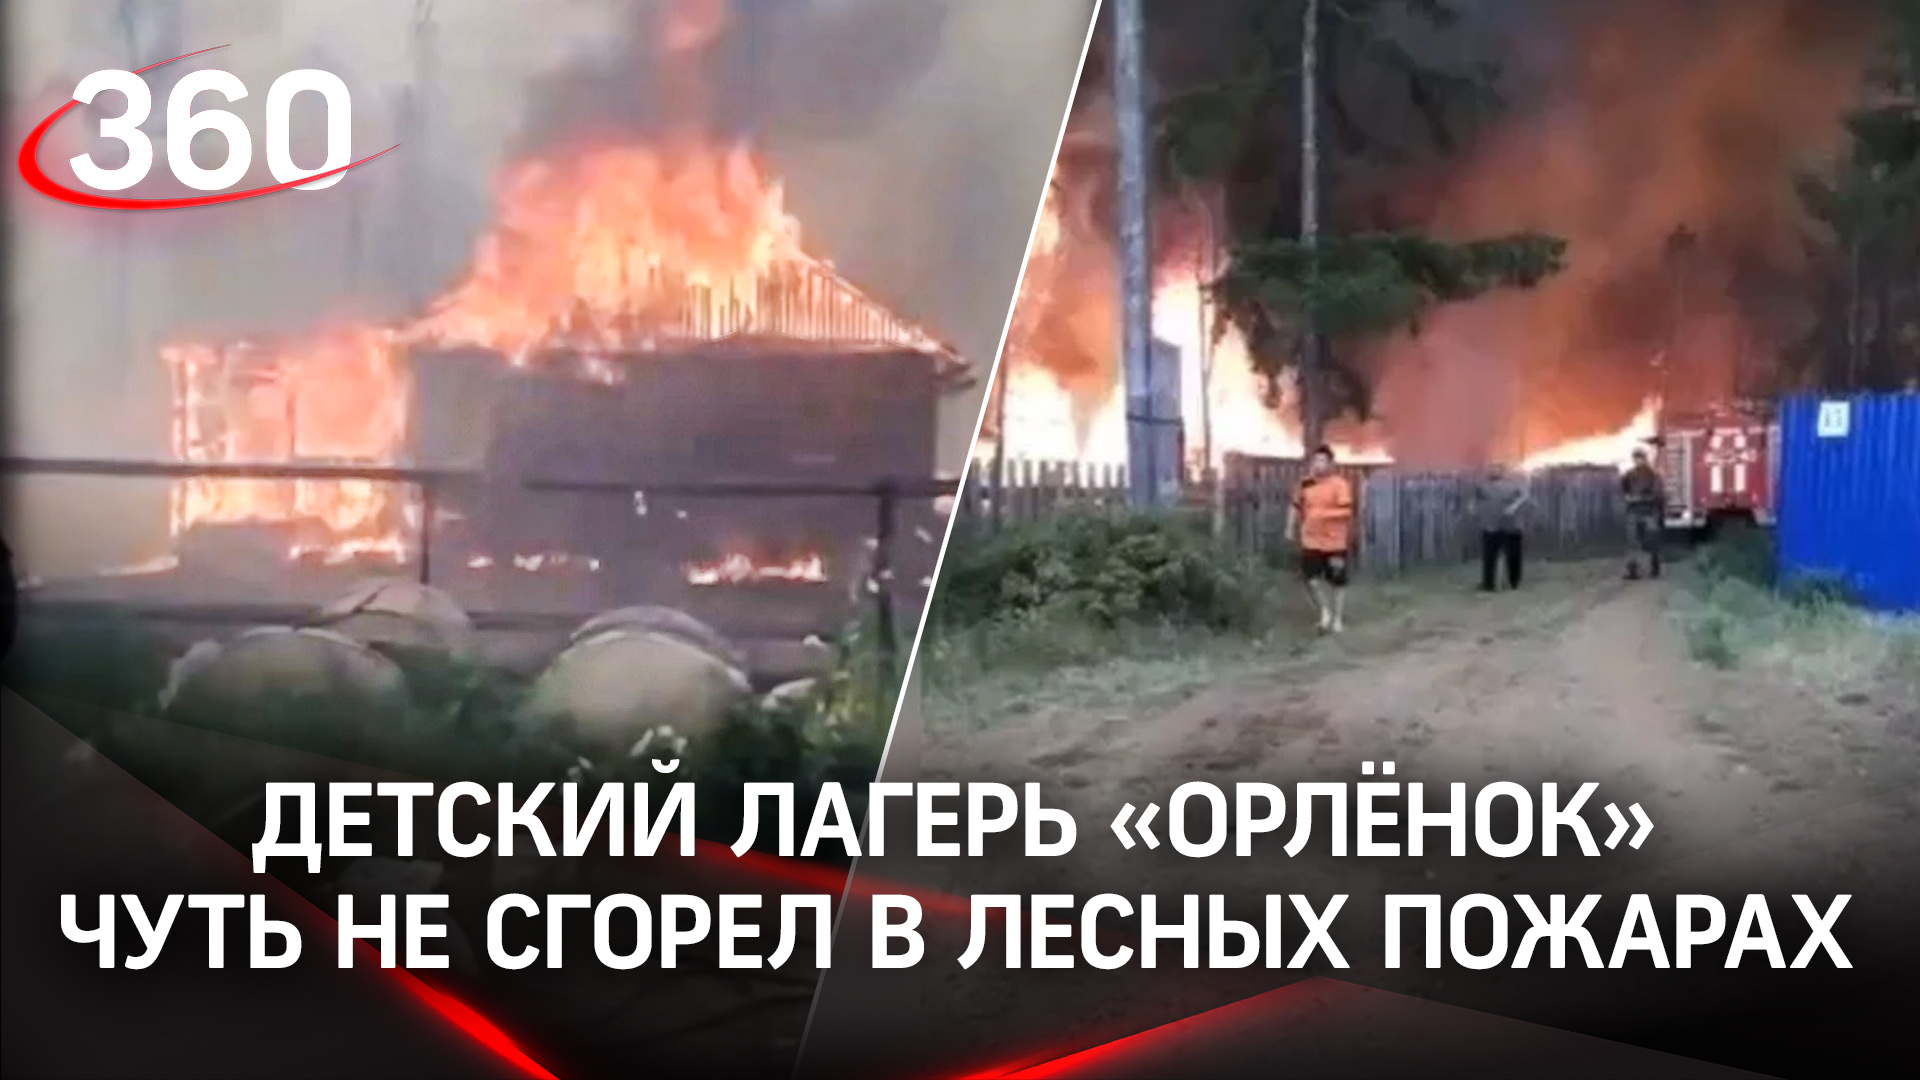 Детский лагерь "Орленок" в Якутии чуть не сгорел в лесных пожарах. Детей эвакуировали